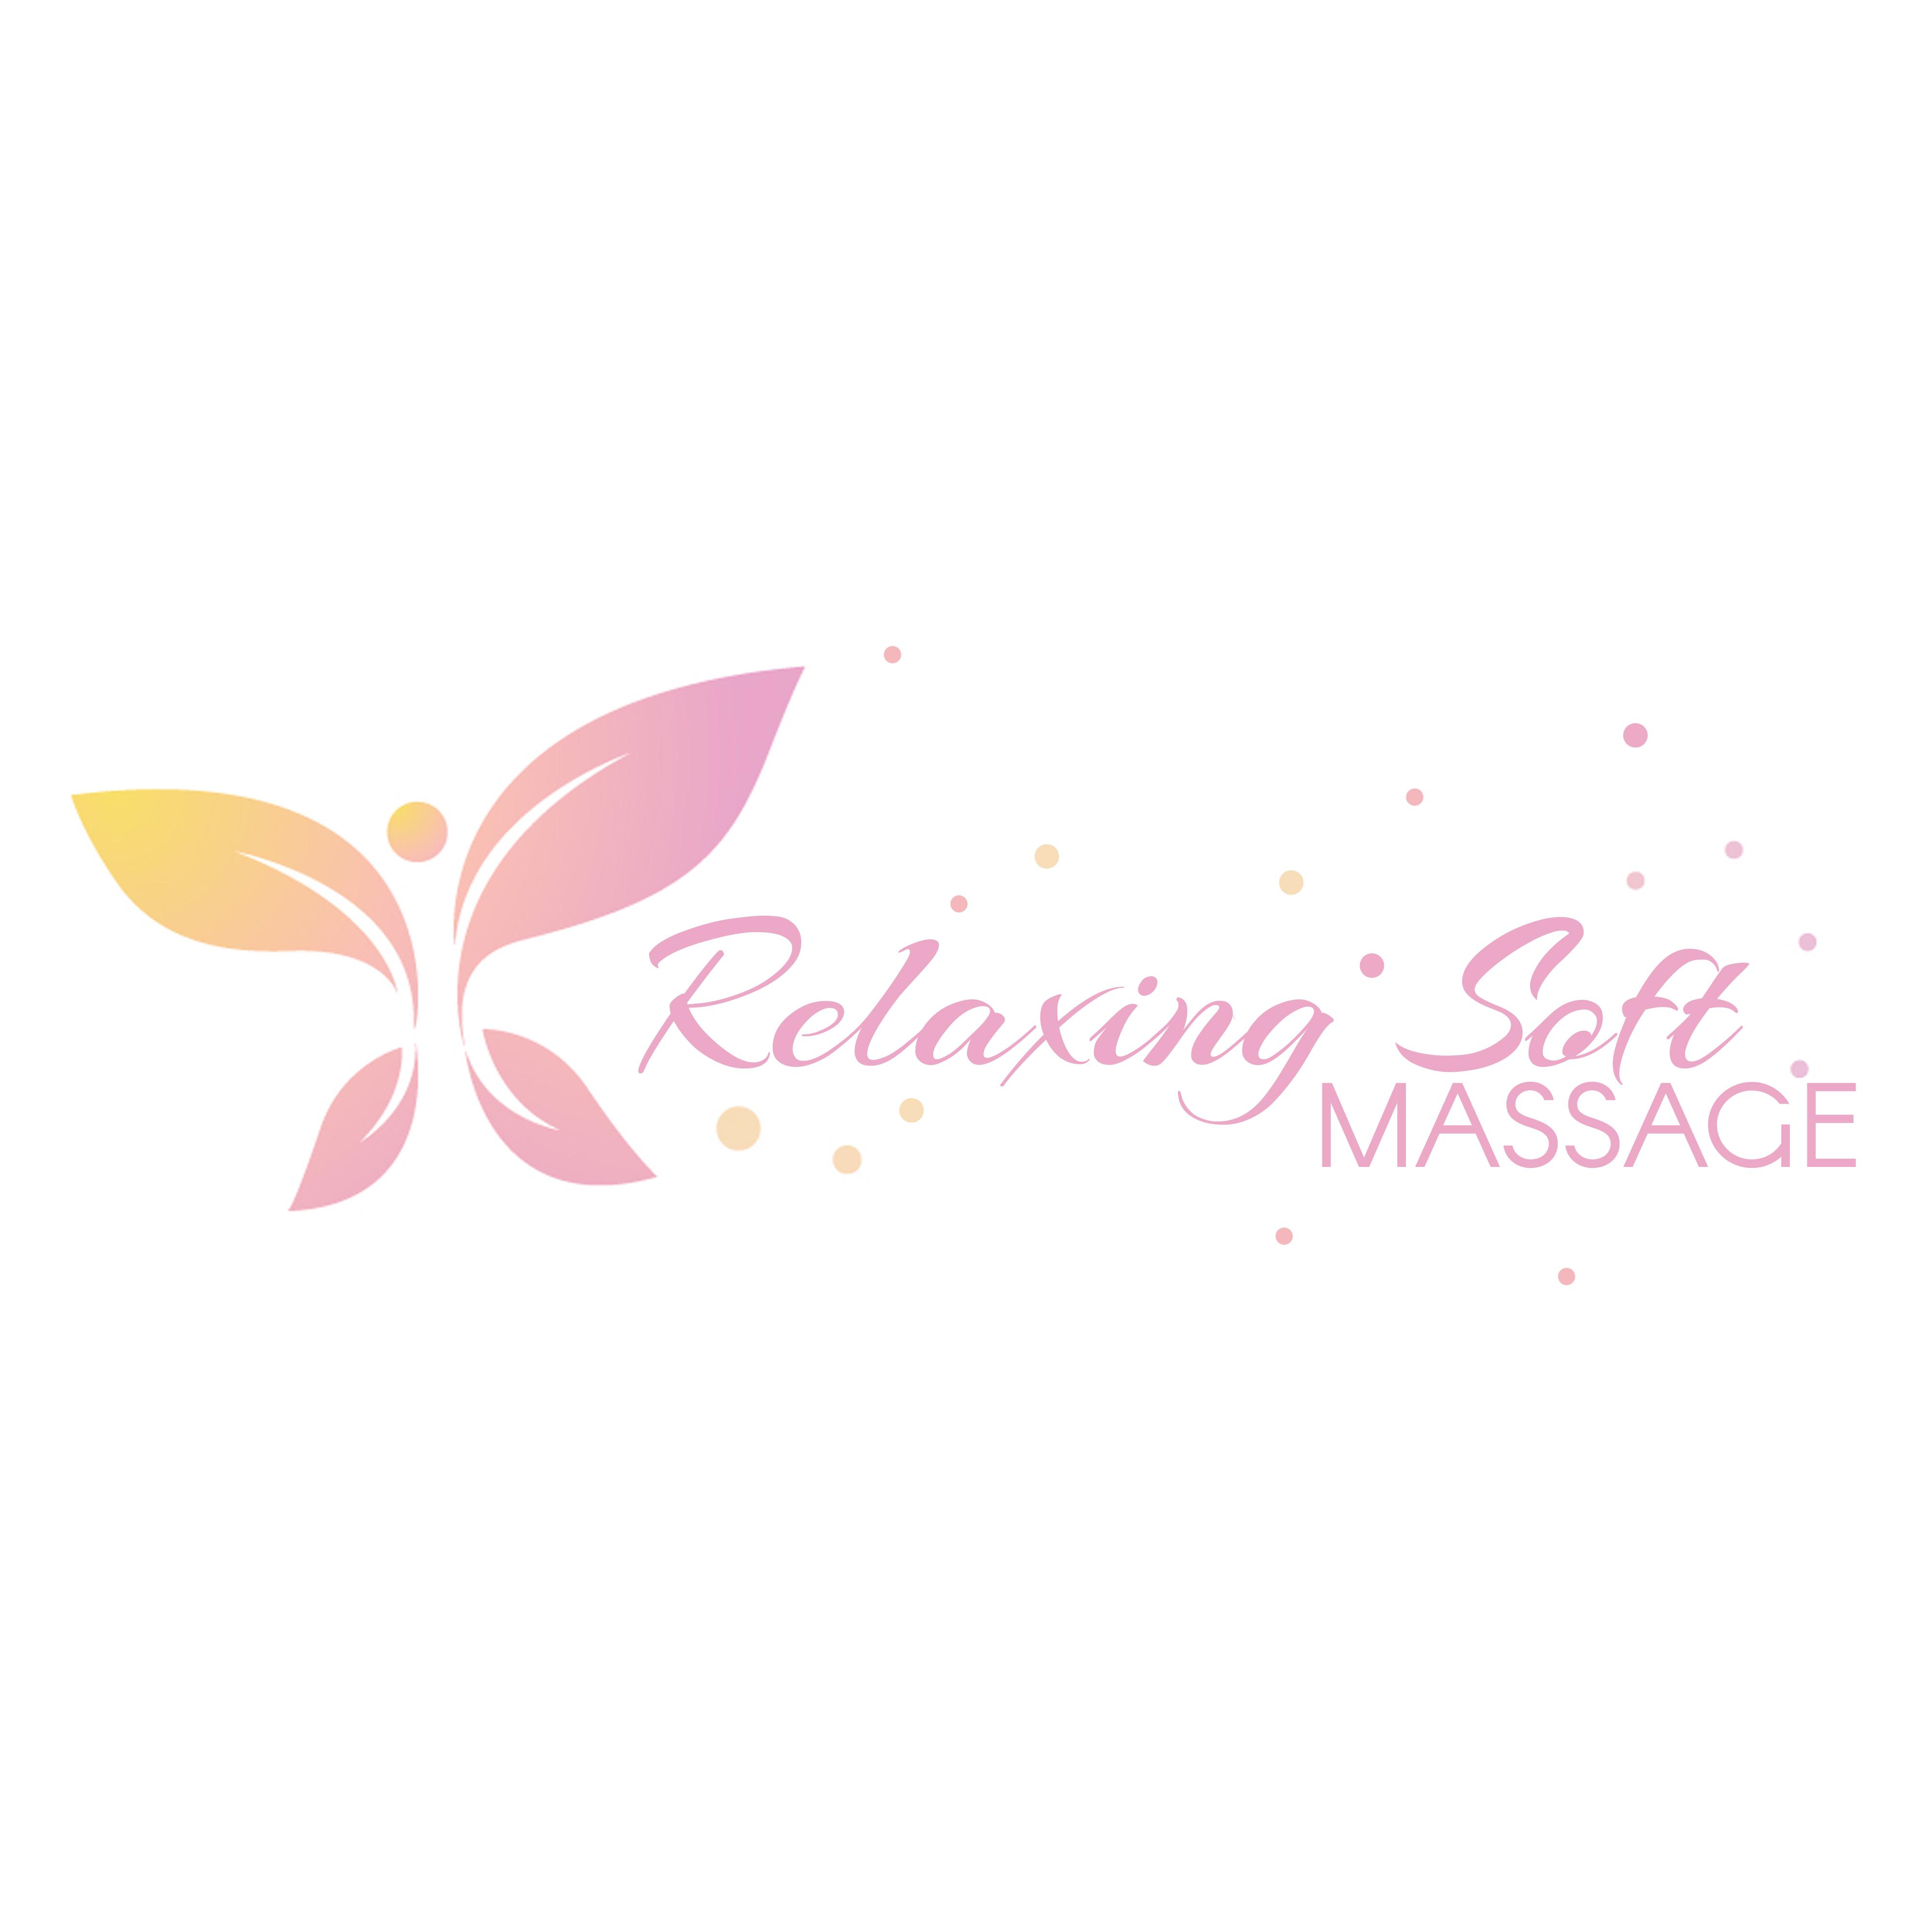 Relaxing Soft Massage